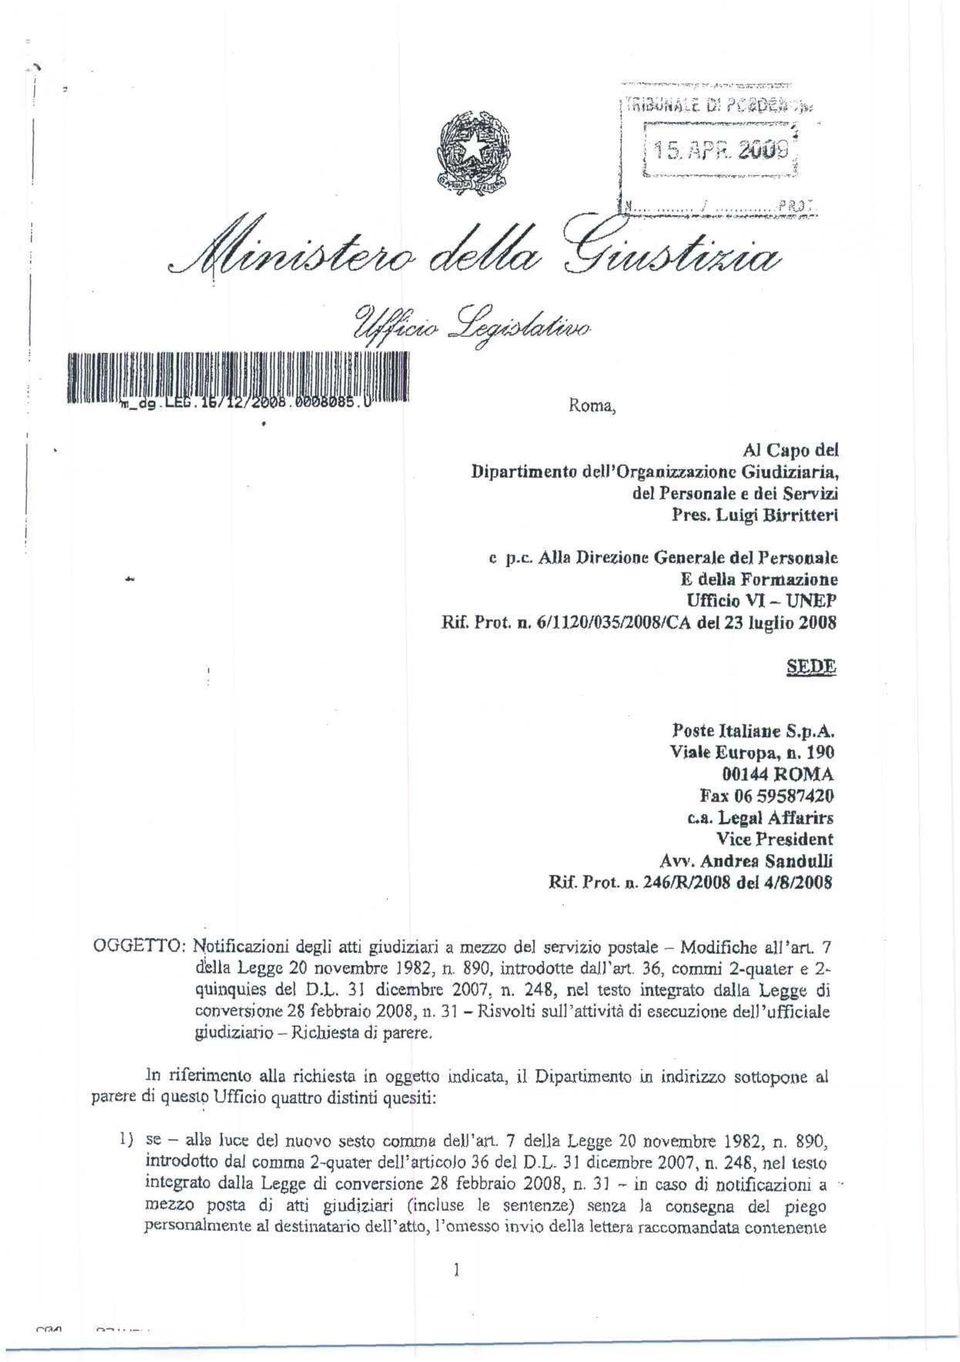 Andrea Sandali] Rif. Prot.». 246/R/2008 del 4/8/2008 OGGETTO: Notificazioni degli atti giudiziari a mezzo del servizio postale - Modifiche all'ari. 7 della Legge 20 novembre 1982, n.